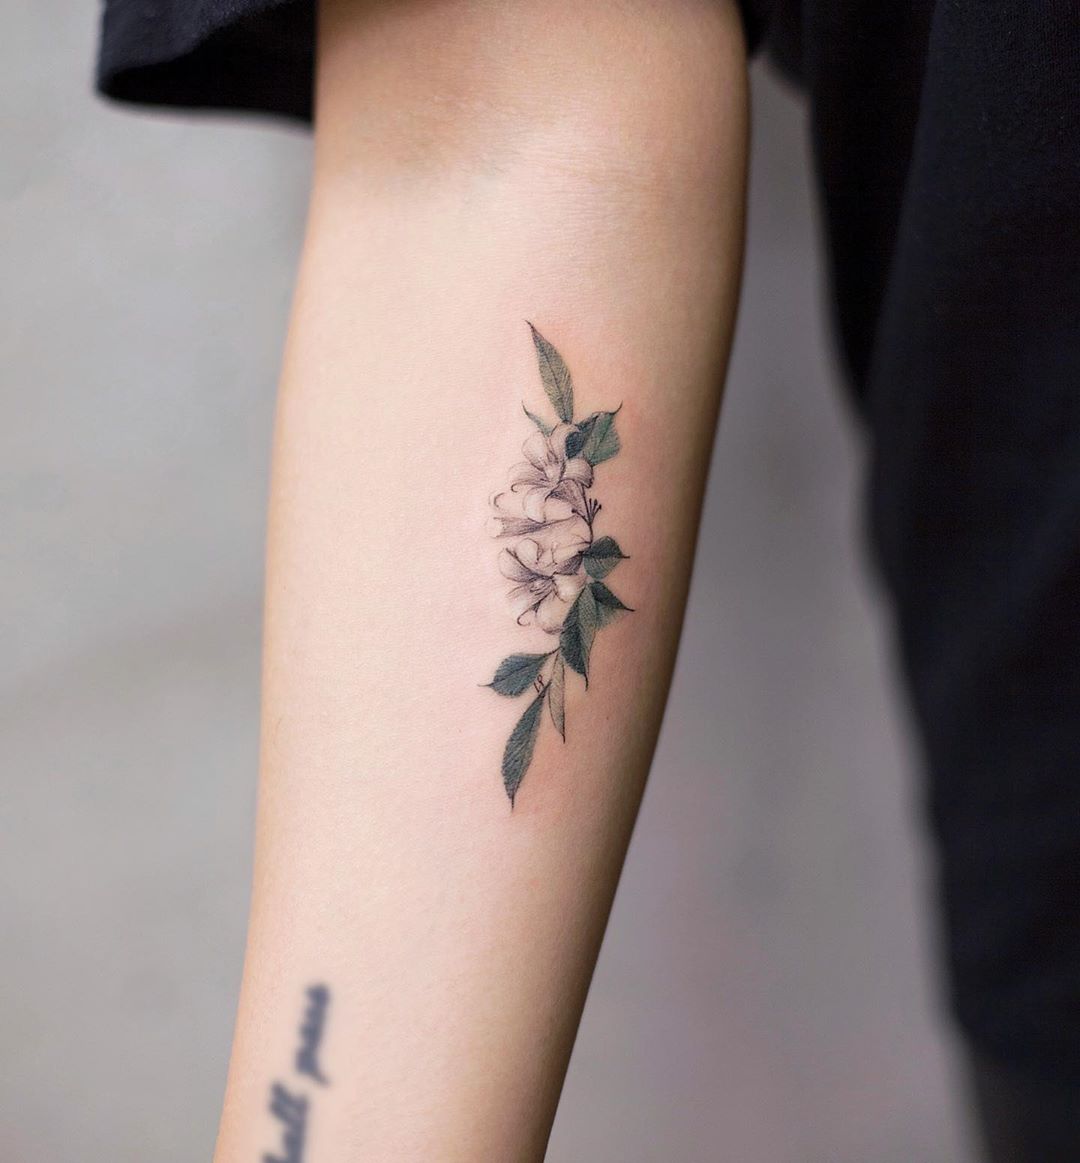 Jasmine by tattooist Franky